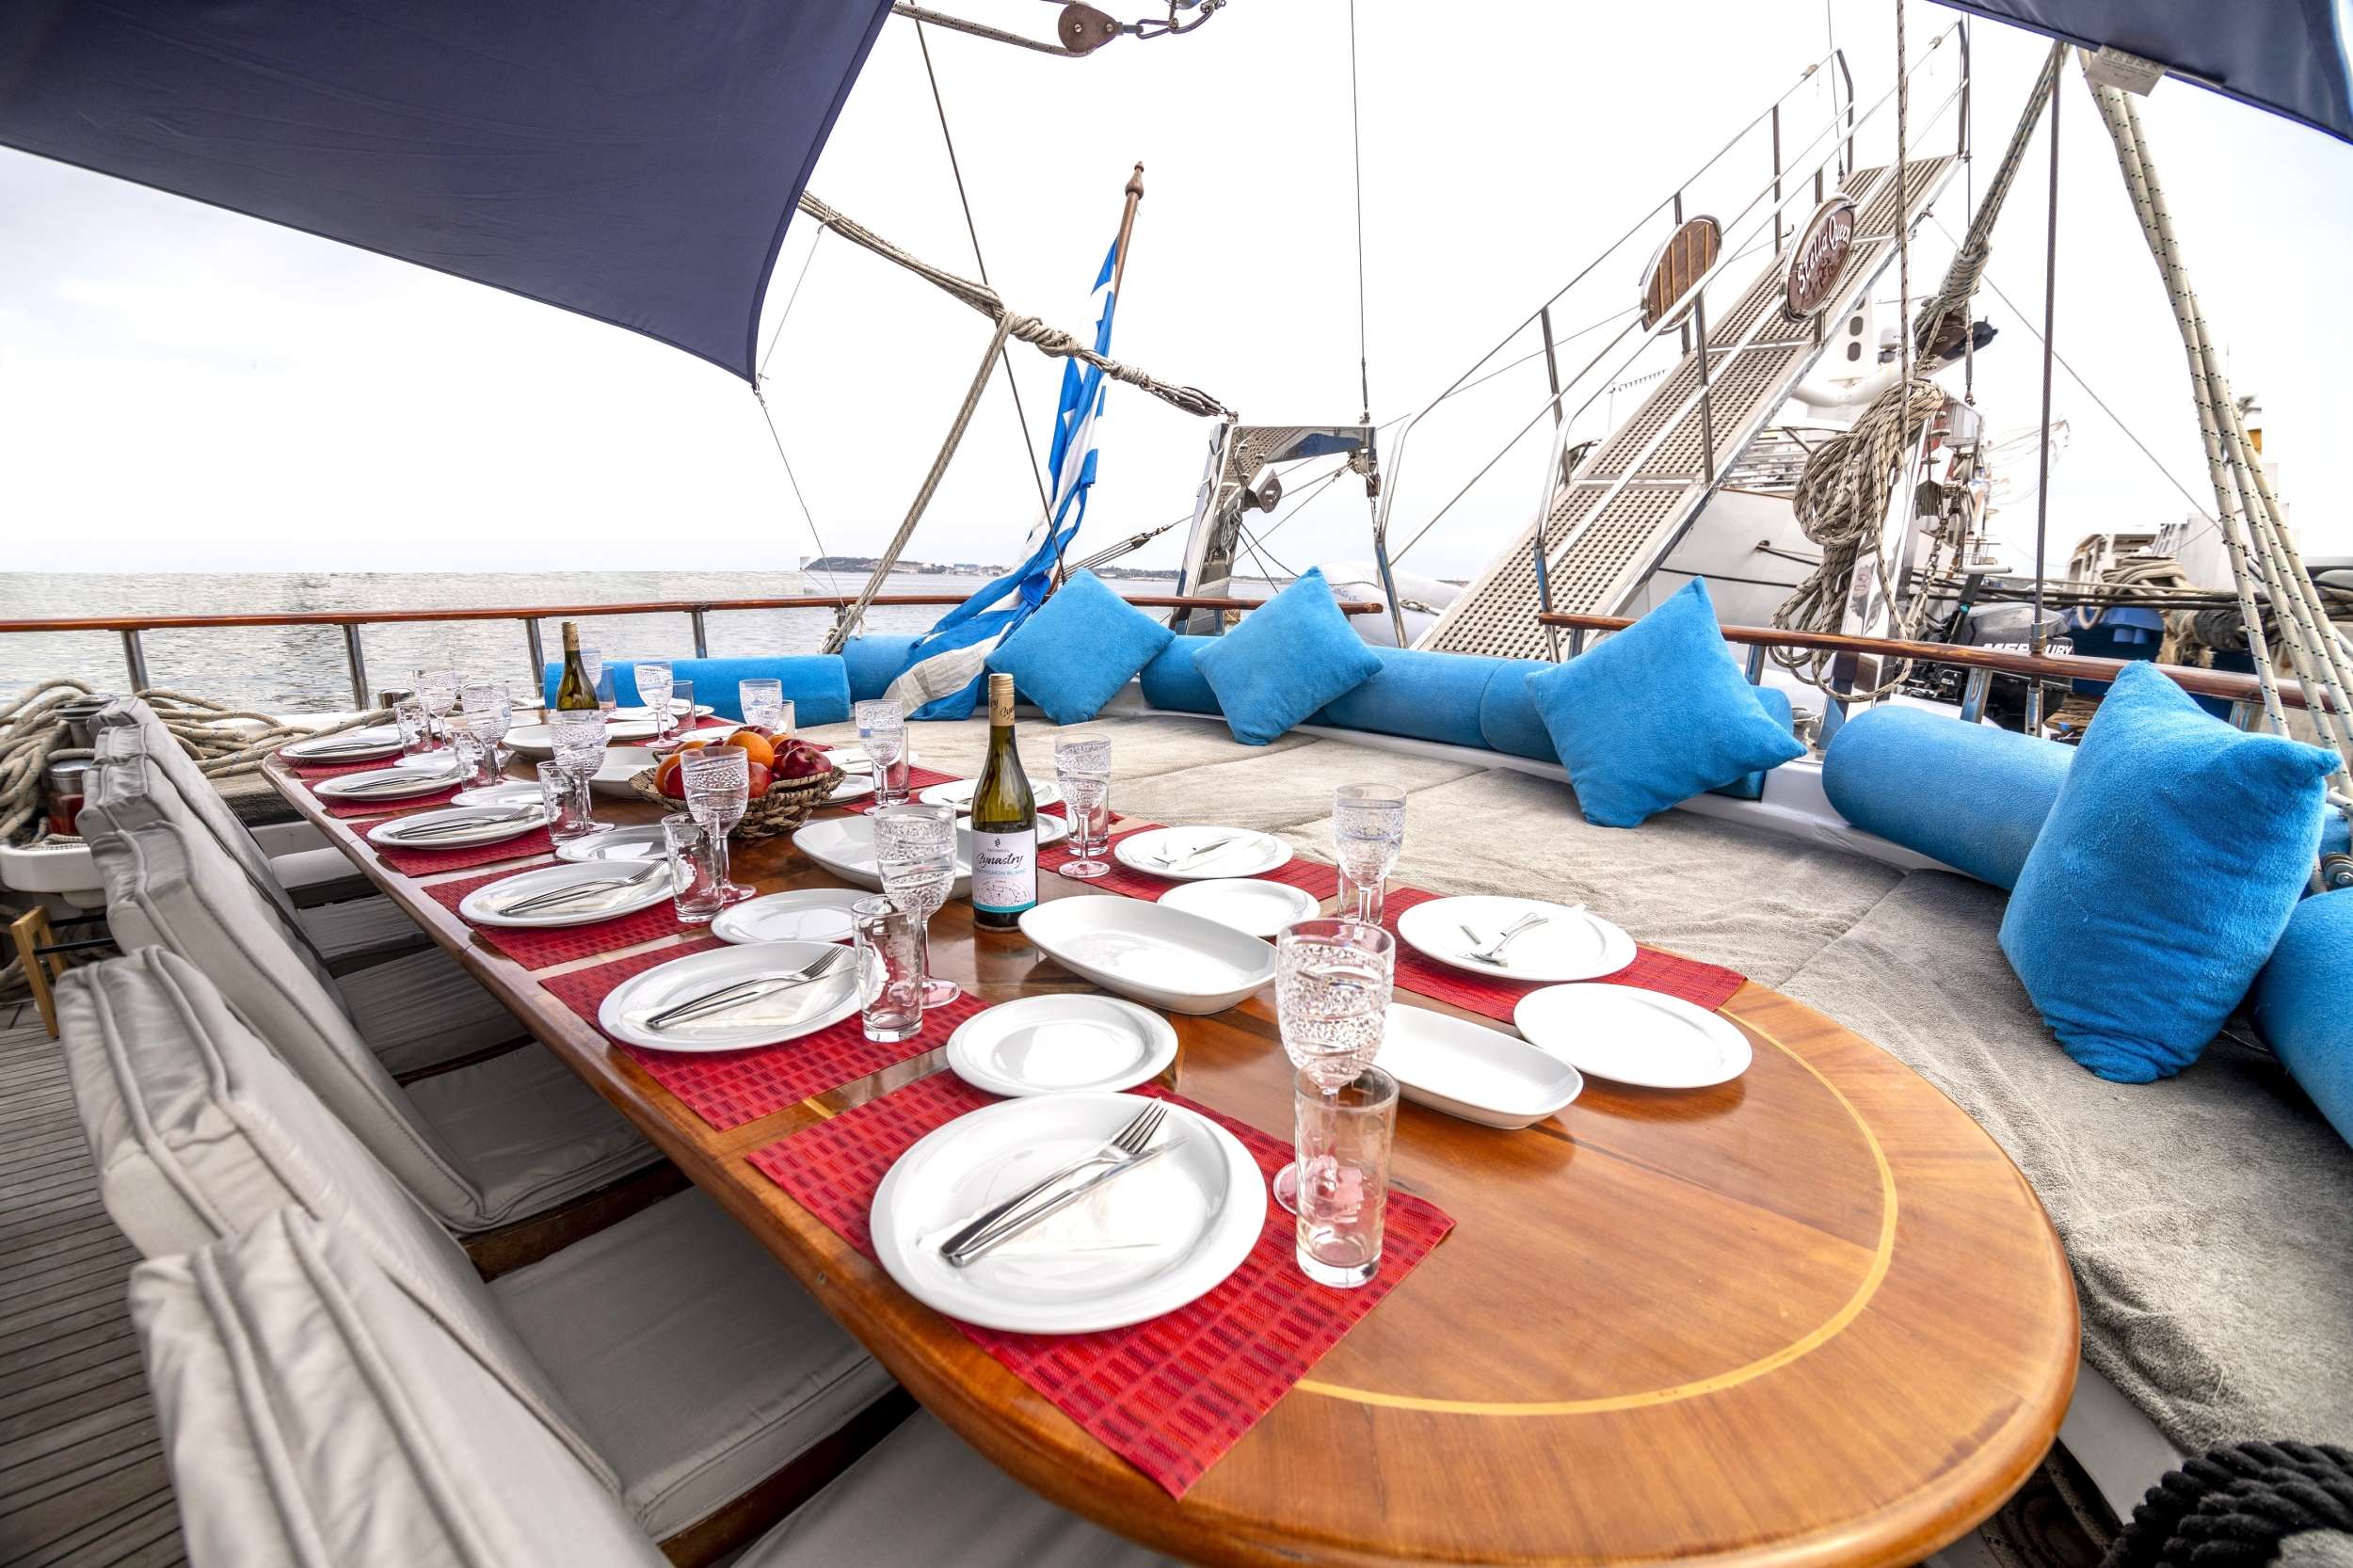 STELLA QUEEN - Yacht Charter Nikiti & Boat hire in Greece 4